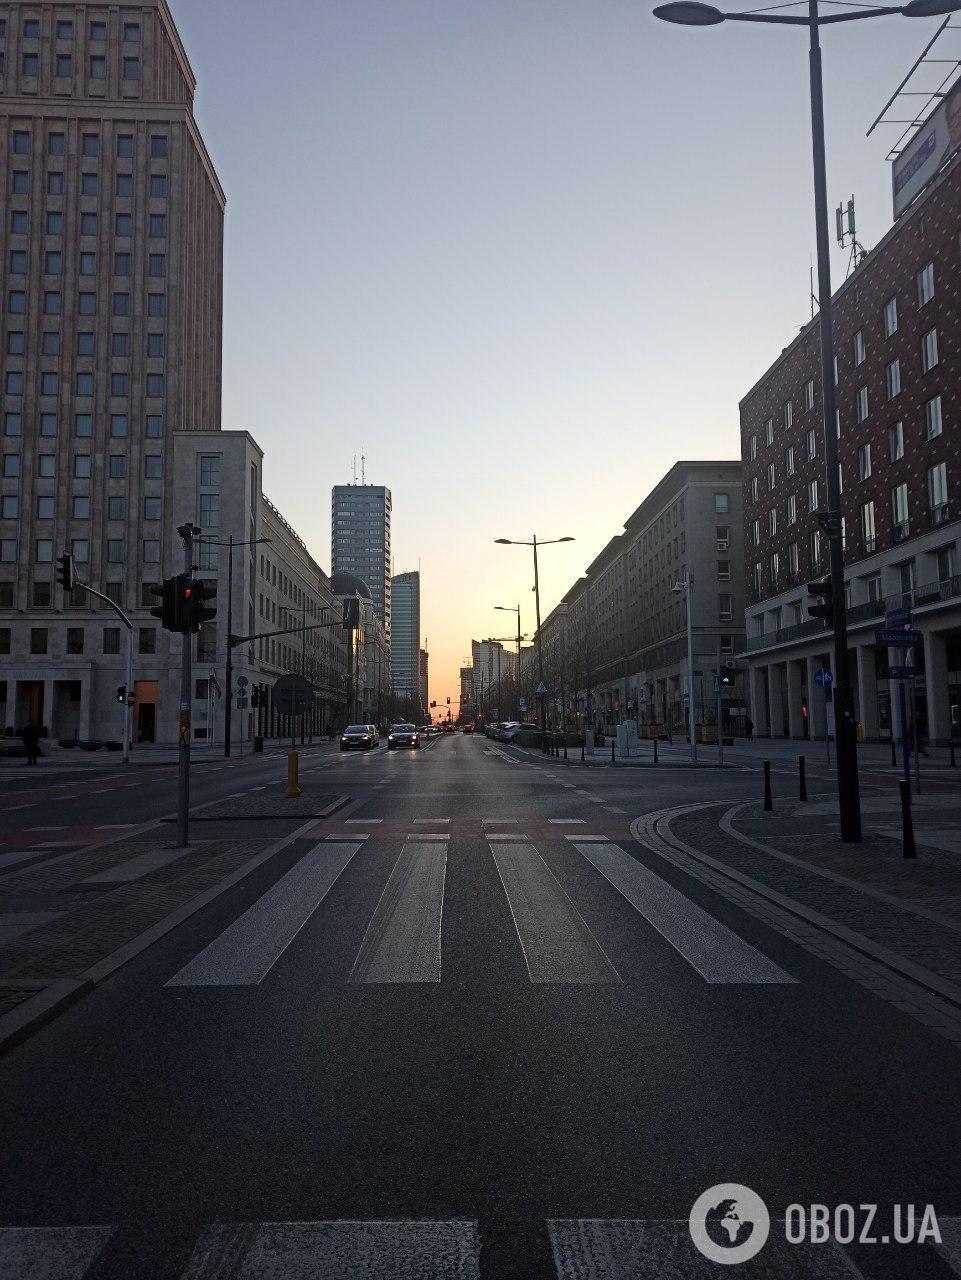 Всегда многолюдная улица в Варшаве сегодня выглядит так